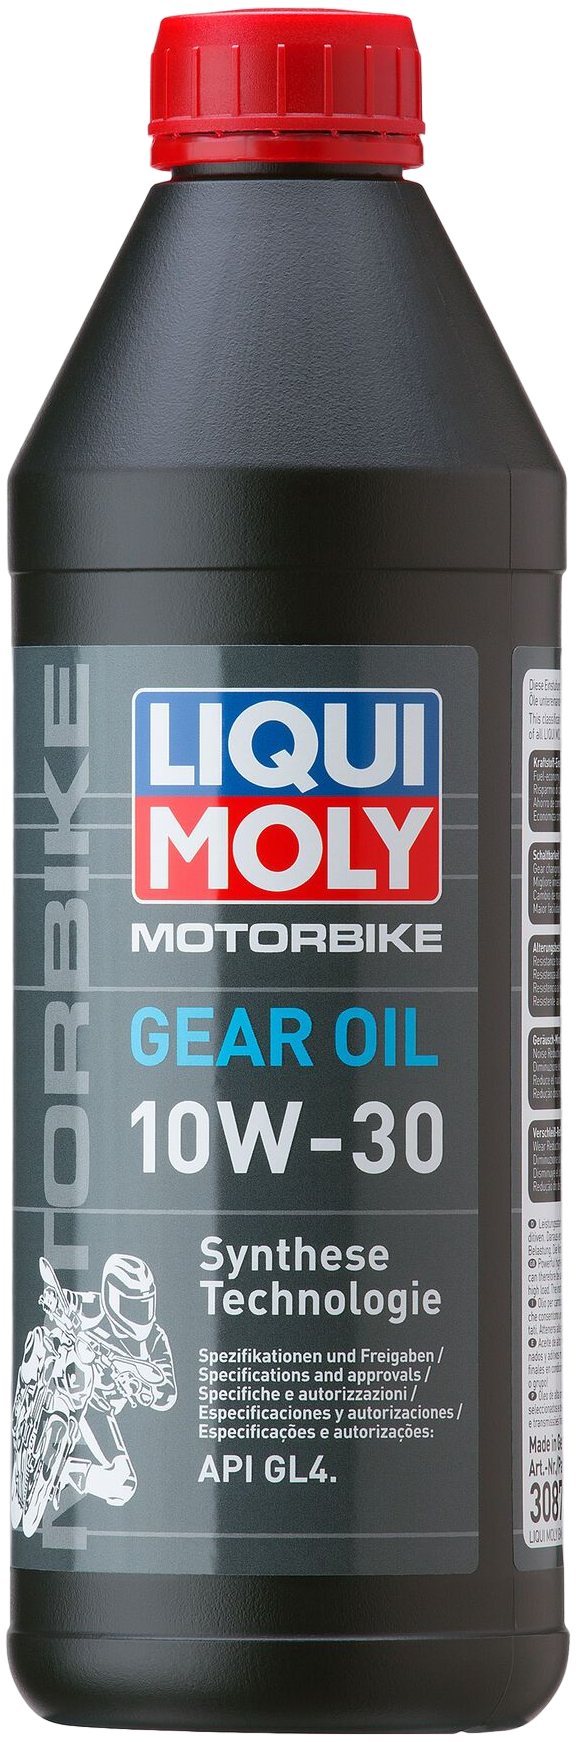 Liqui Moly Motorbike Gear Oil 10W-30, 6 x 1 lt detail 2